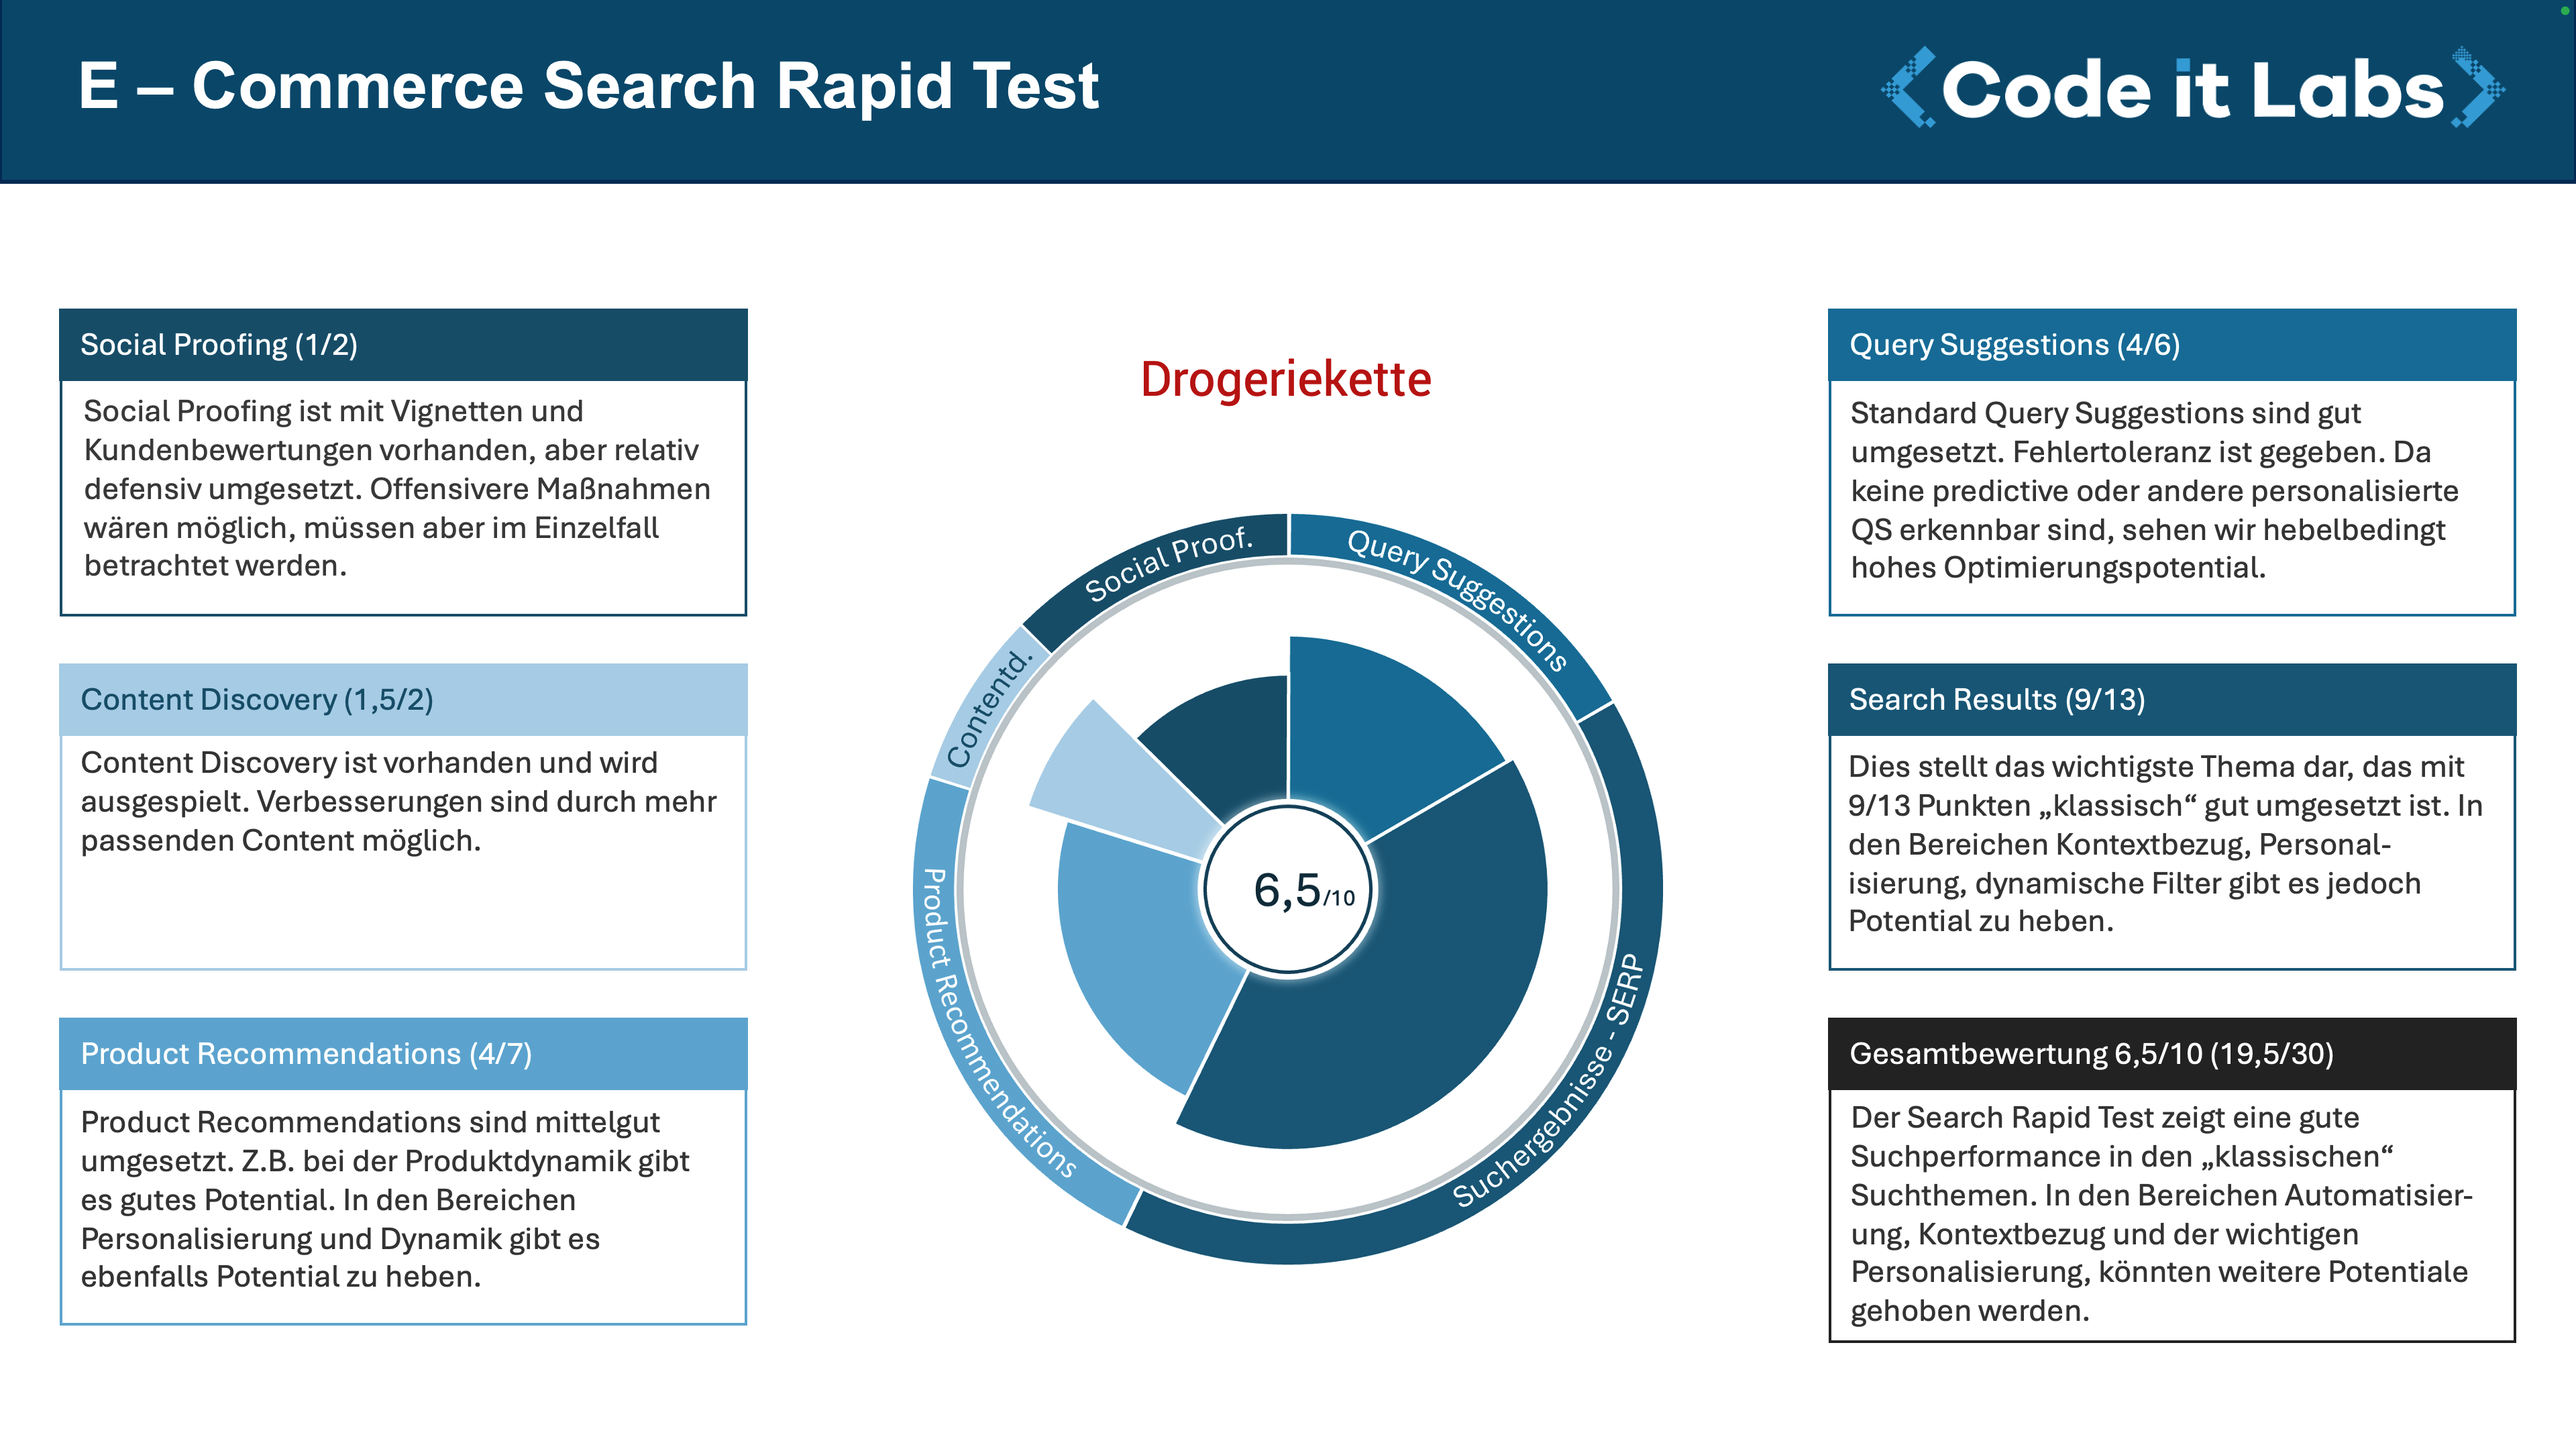 Business Sumerary vom Search Rapid Test für eine deutsche Drogeriekette